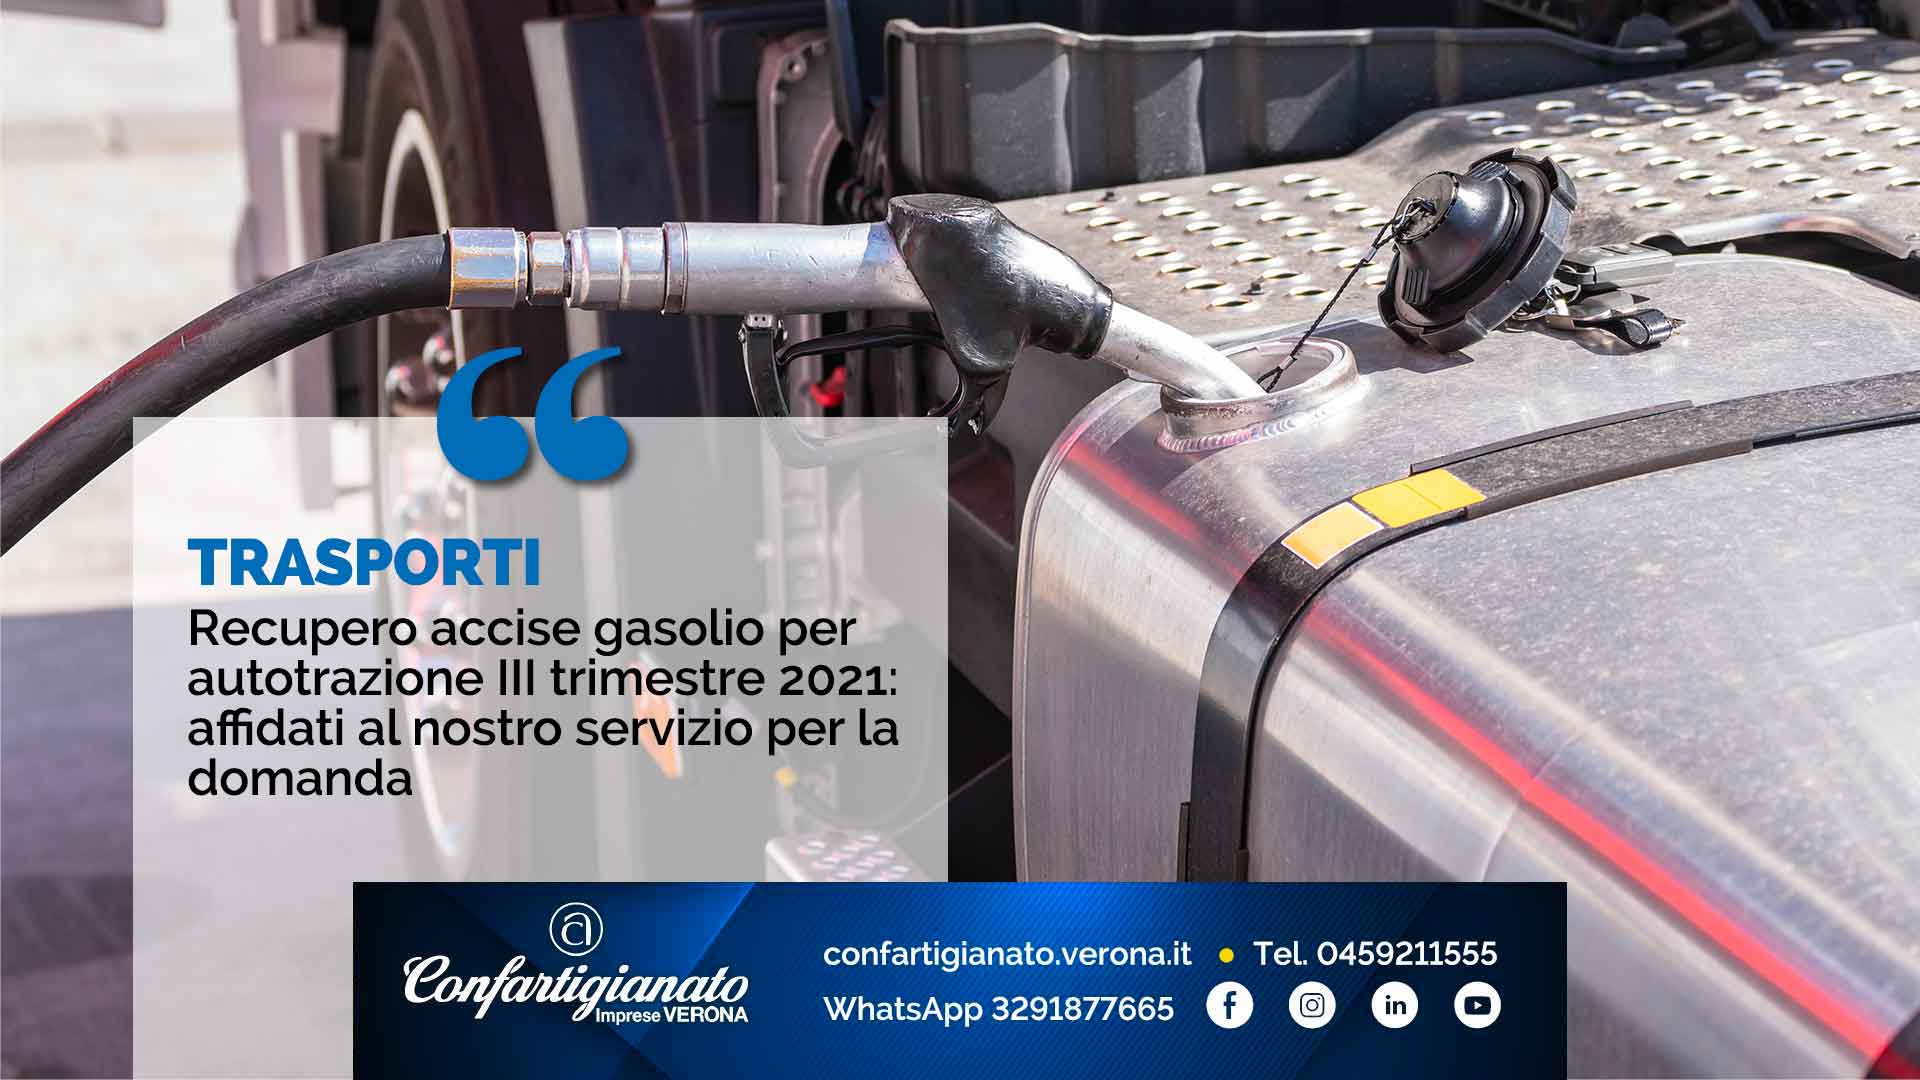 TRASPORTI - Recupero accise gasolio per autotrazione III trimestre 2021: affidati al nostro servizio per la domanda